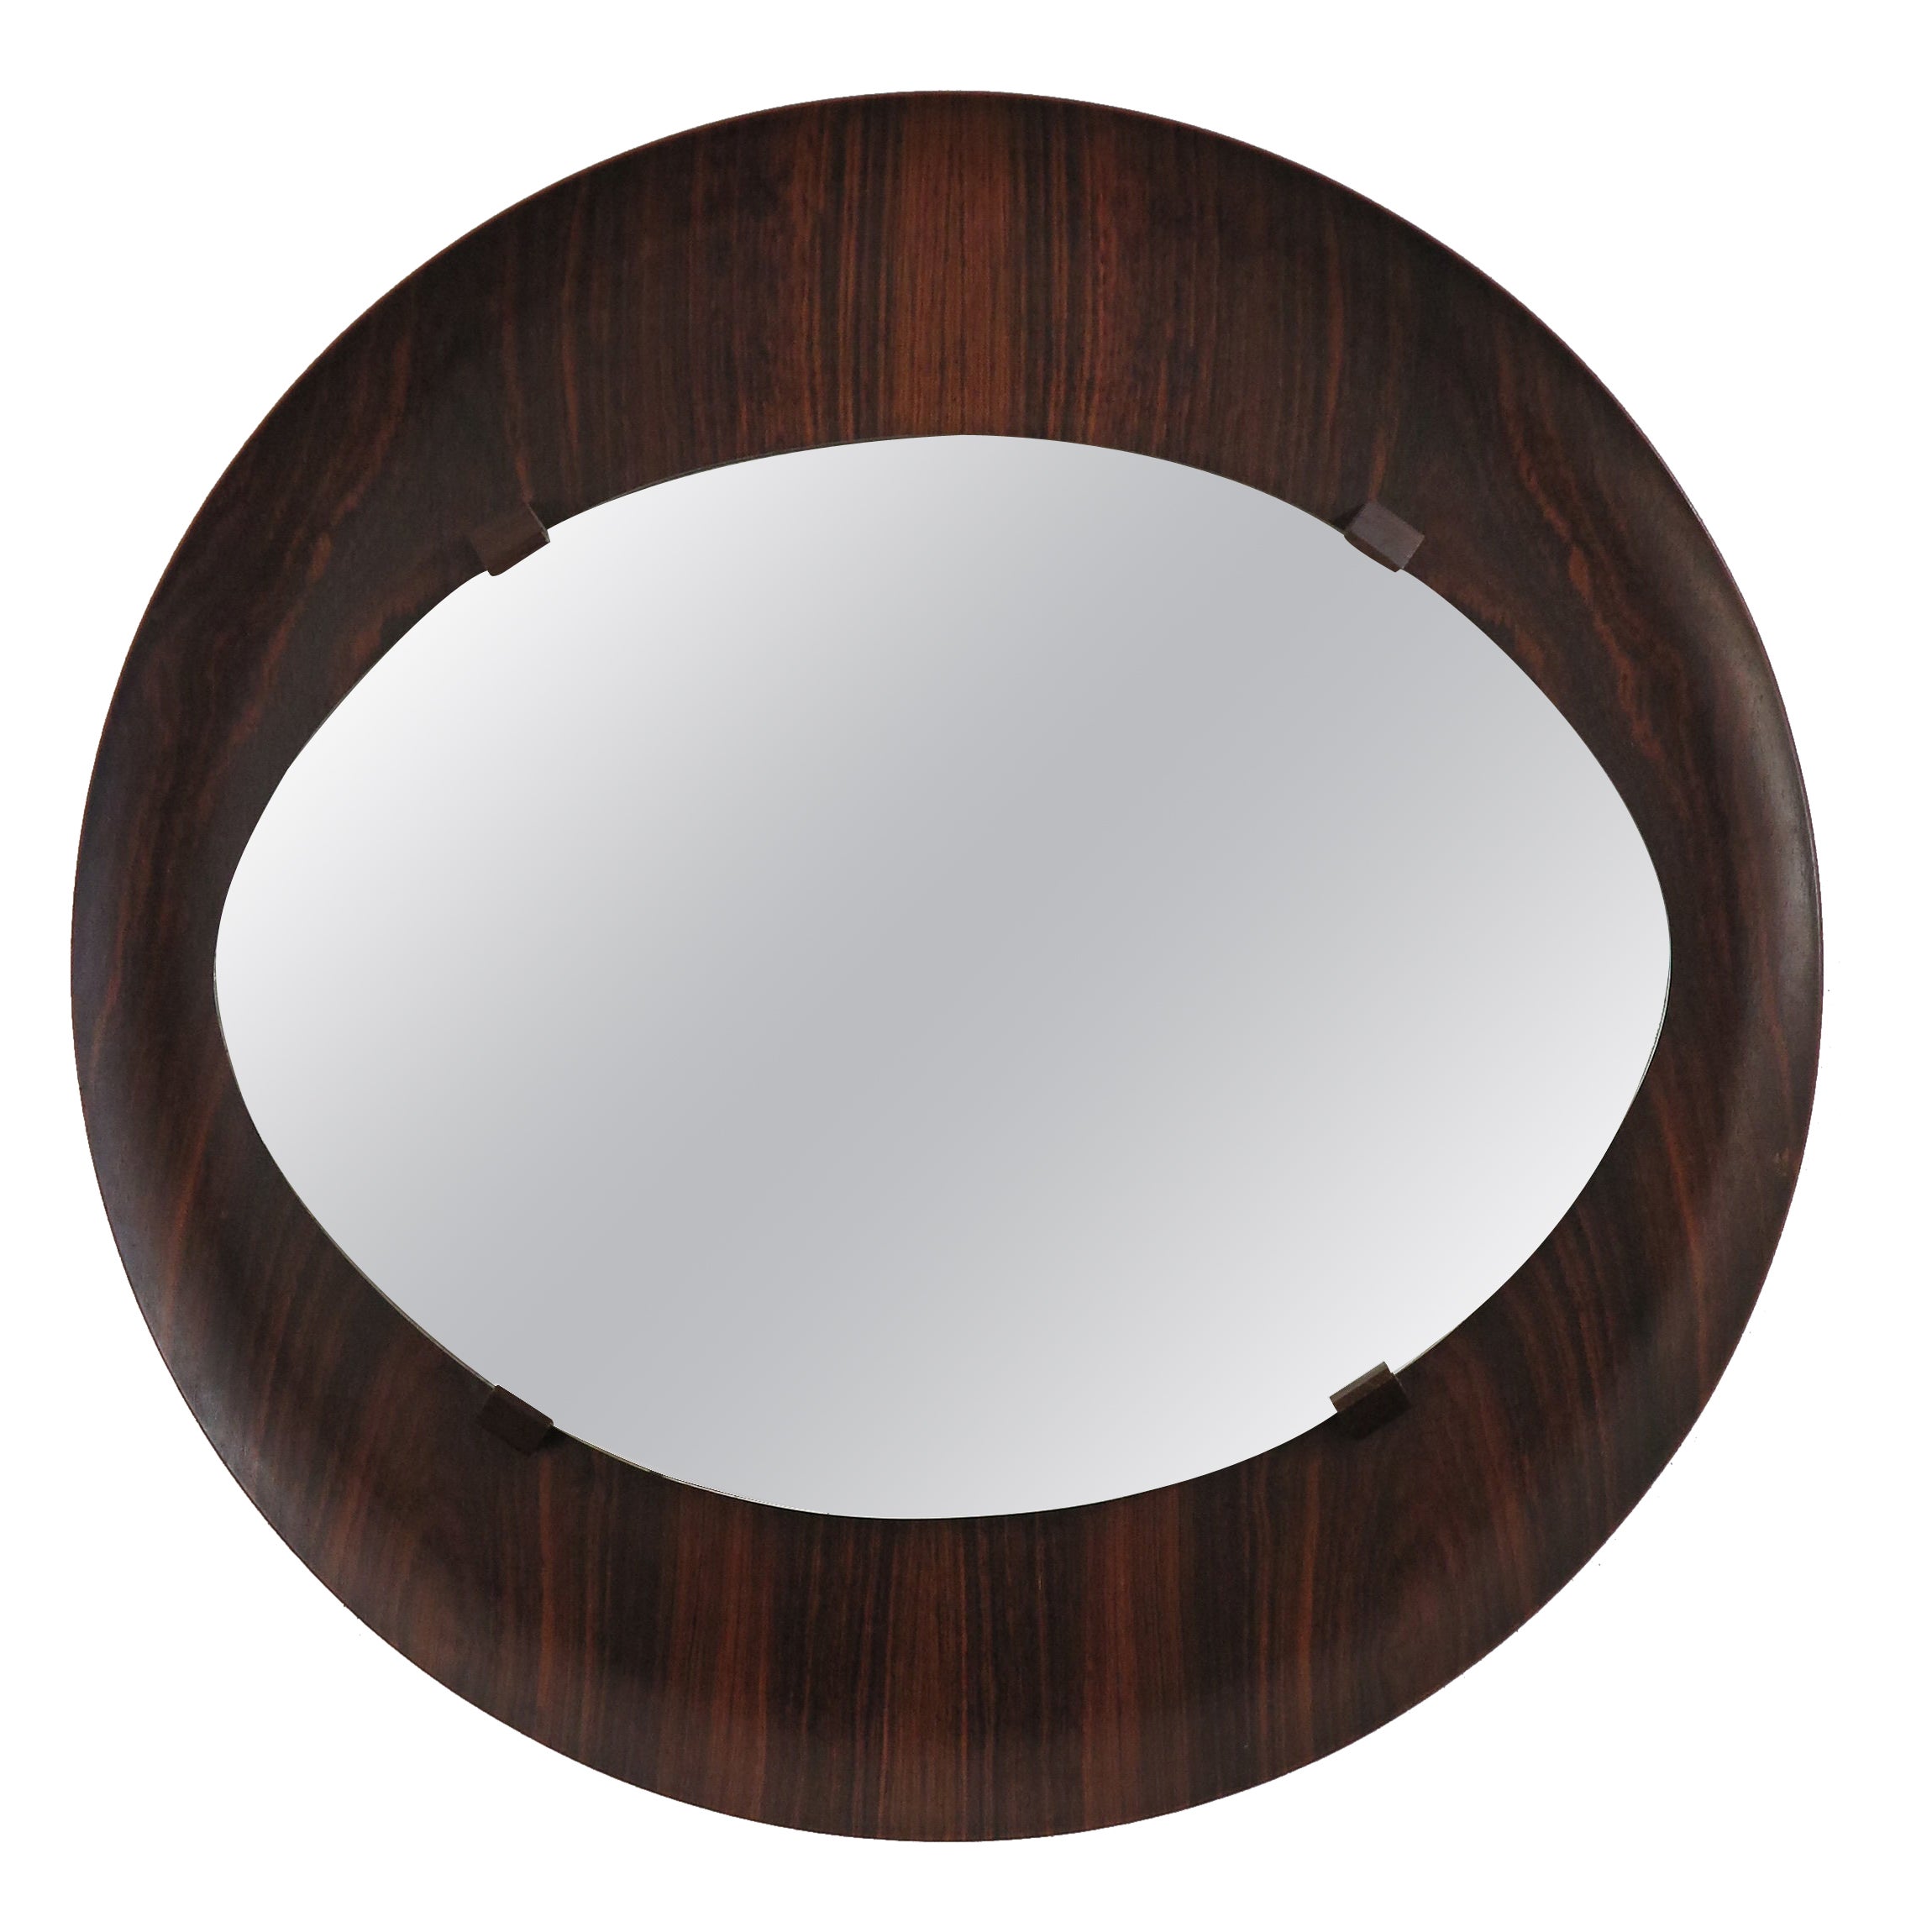 Italian Midcentury Circular Dark Wood Wall Mirror, 1960s